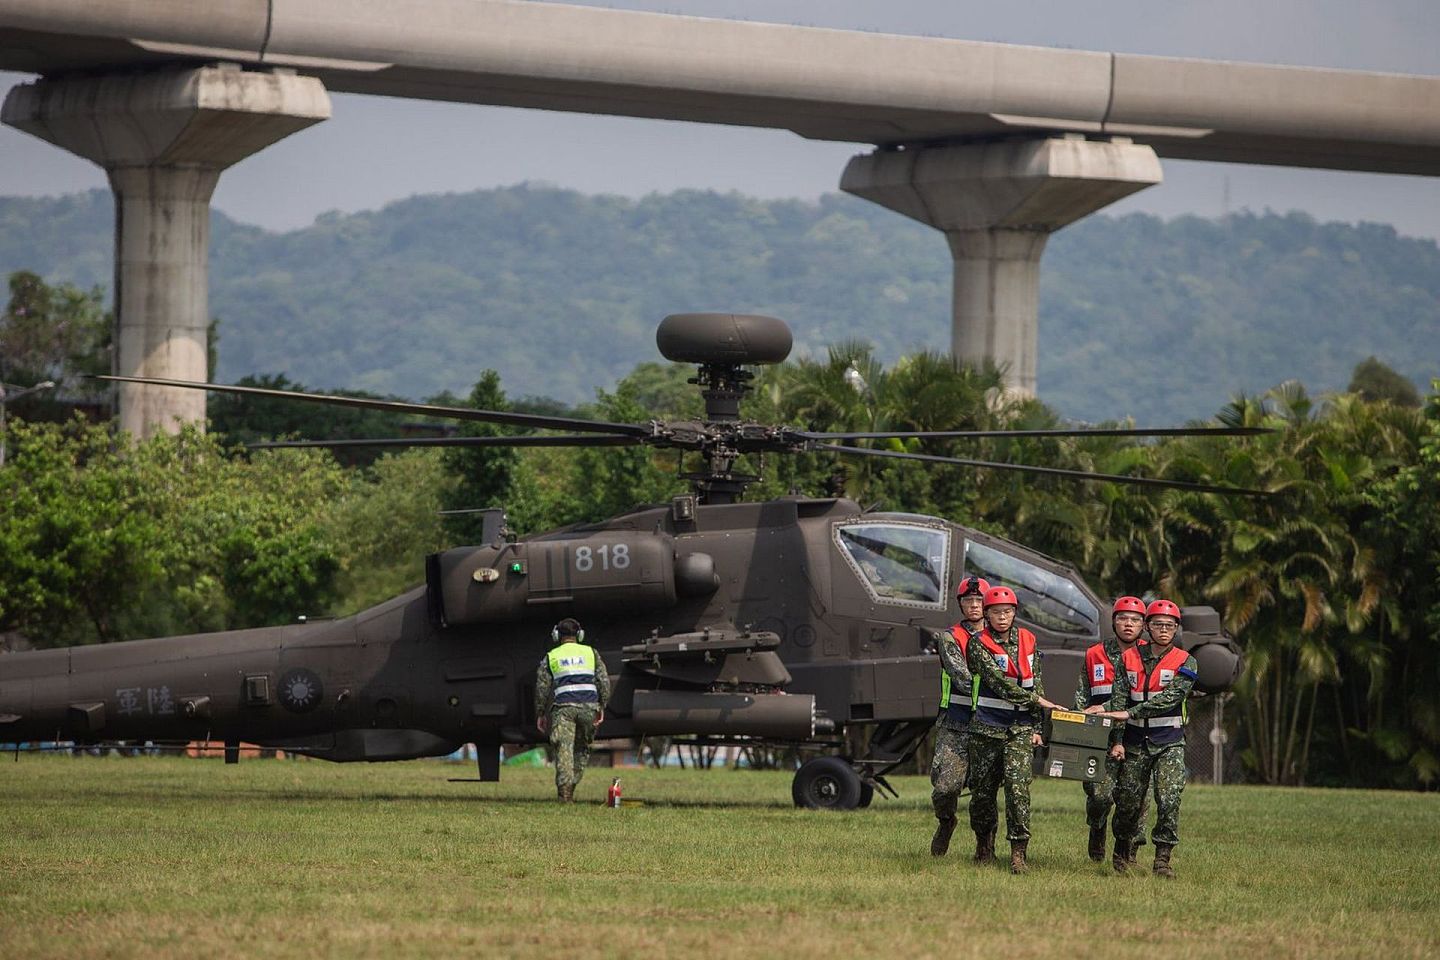 与OH—58D战搜直升机一起模拟应急降落的AH—64E阿帕契战斗直升机，其桅顶上布有长弓雷达，模拟战时的补给弹药应急作业。（台湾国防部）